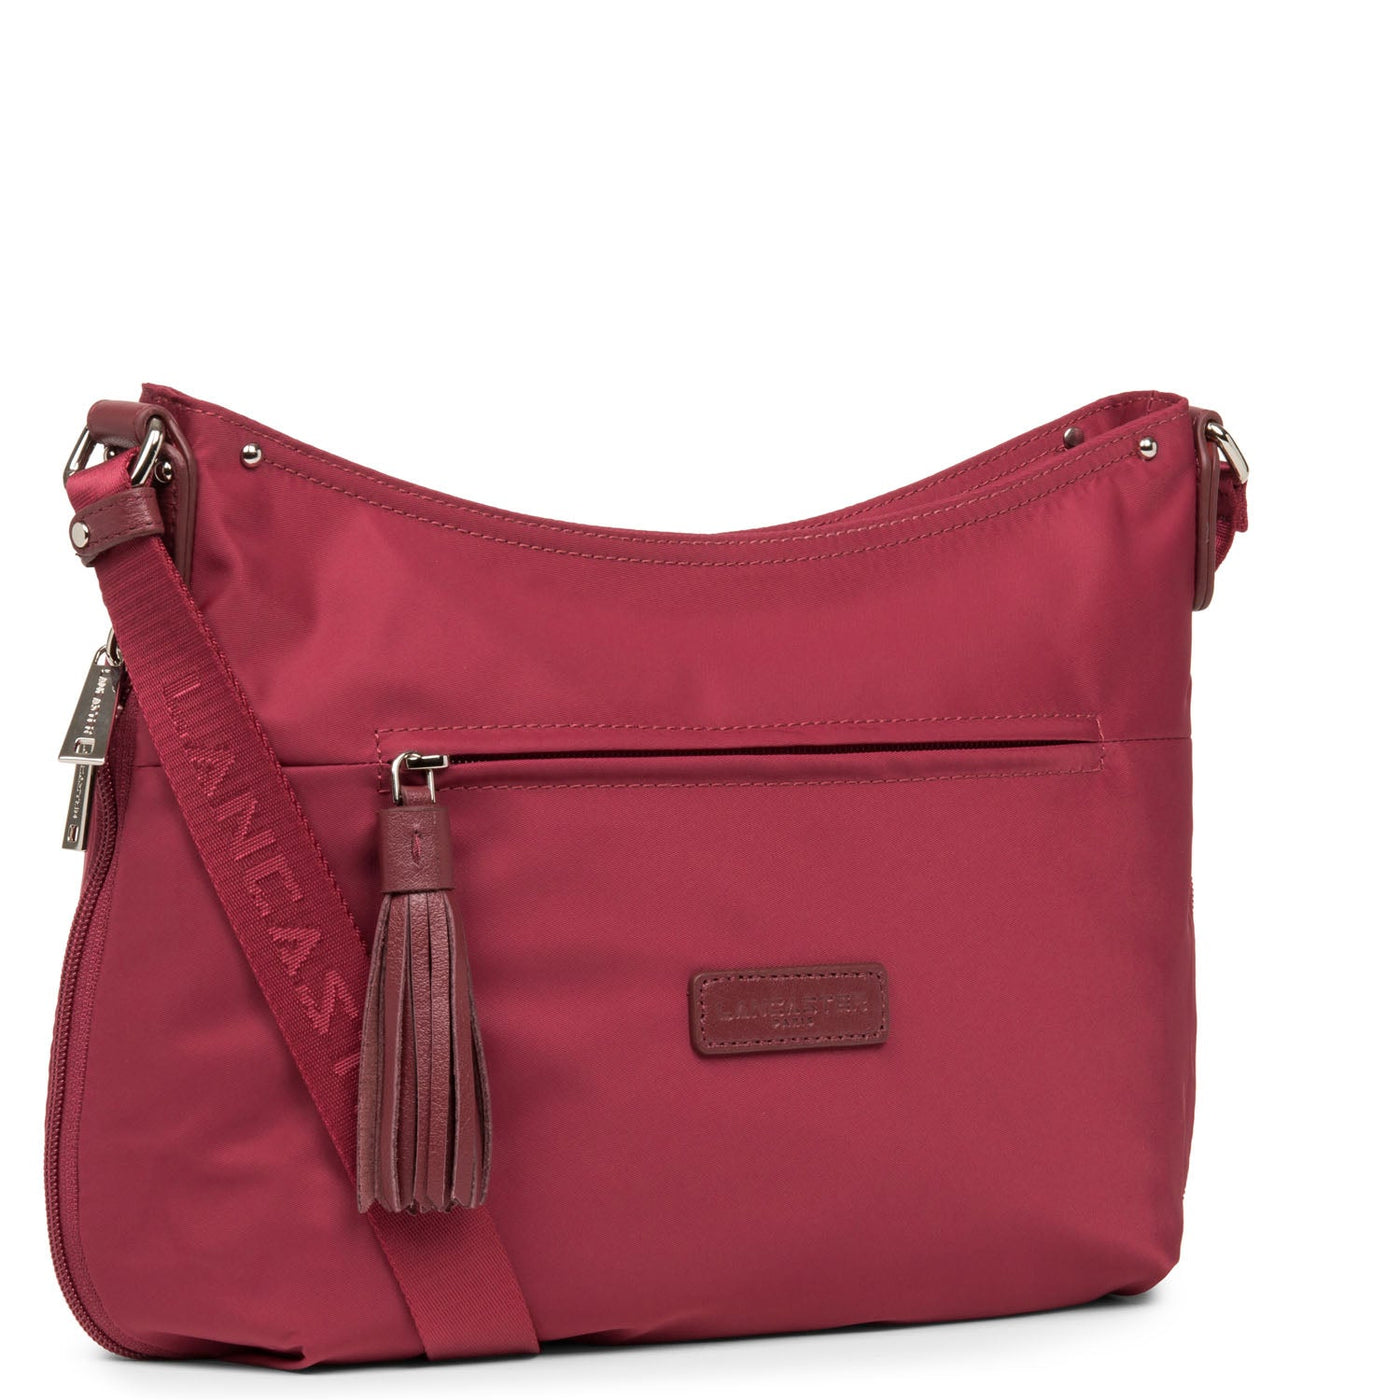 shoulder bag - basic pompon #couleur_framboise